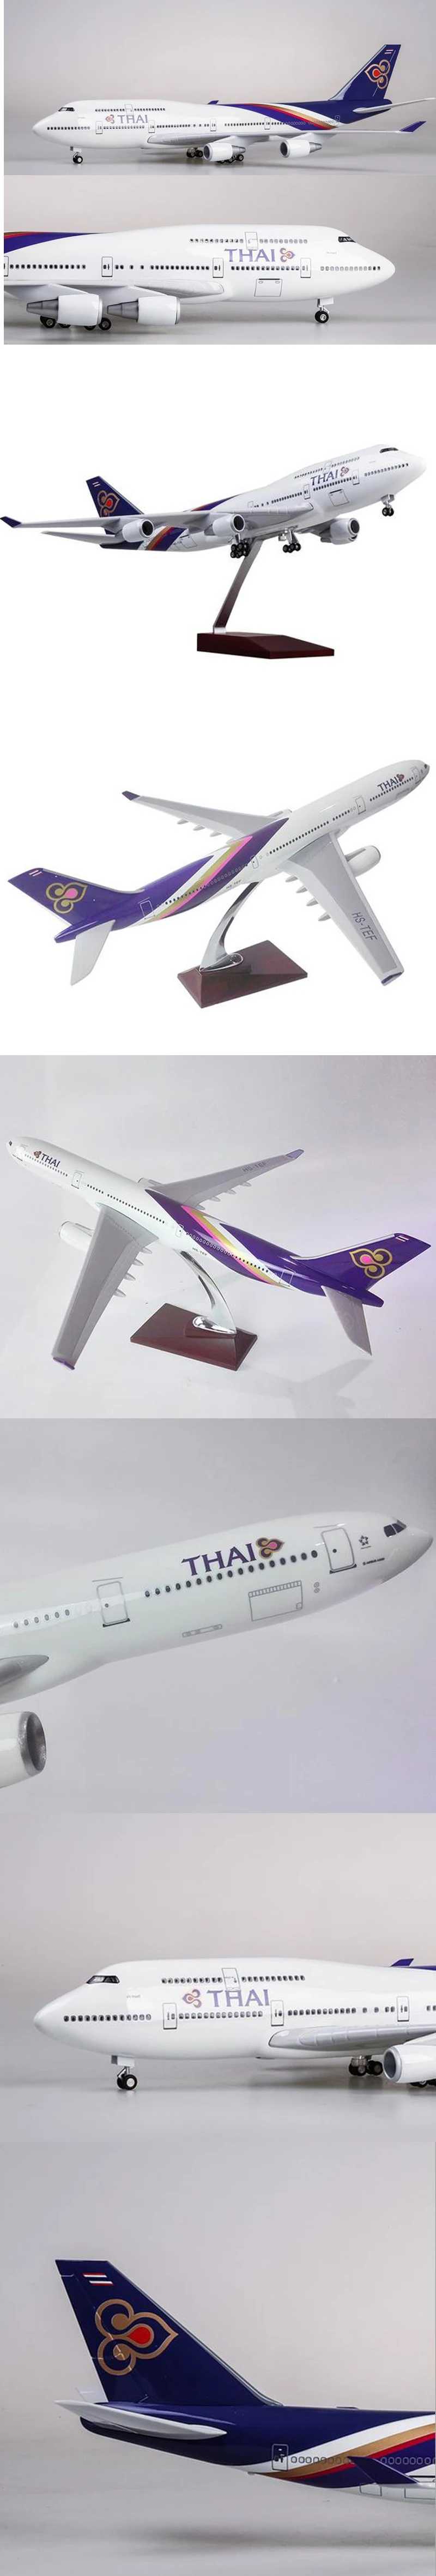 1/150 масштаб 47 см B747 модель самолета Thai Airways модель самолета с светильник и колесами полимерная модель самолета для коллекционного подарка